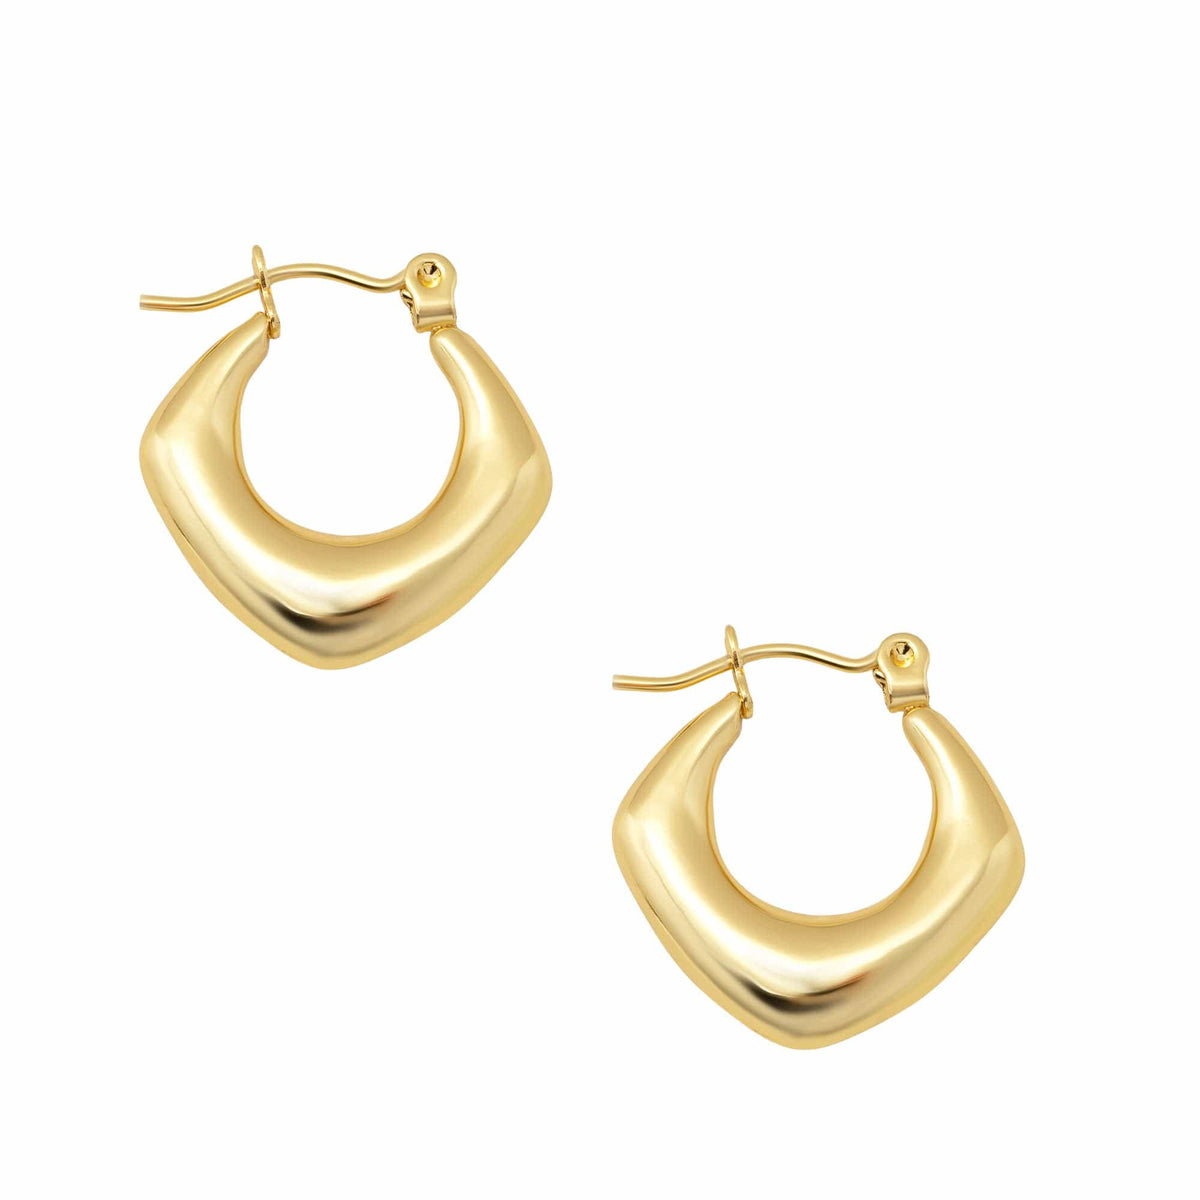 BohoMoon Stainless Steel Tessa Hoop Earrings Gold